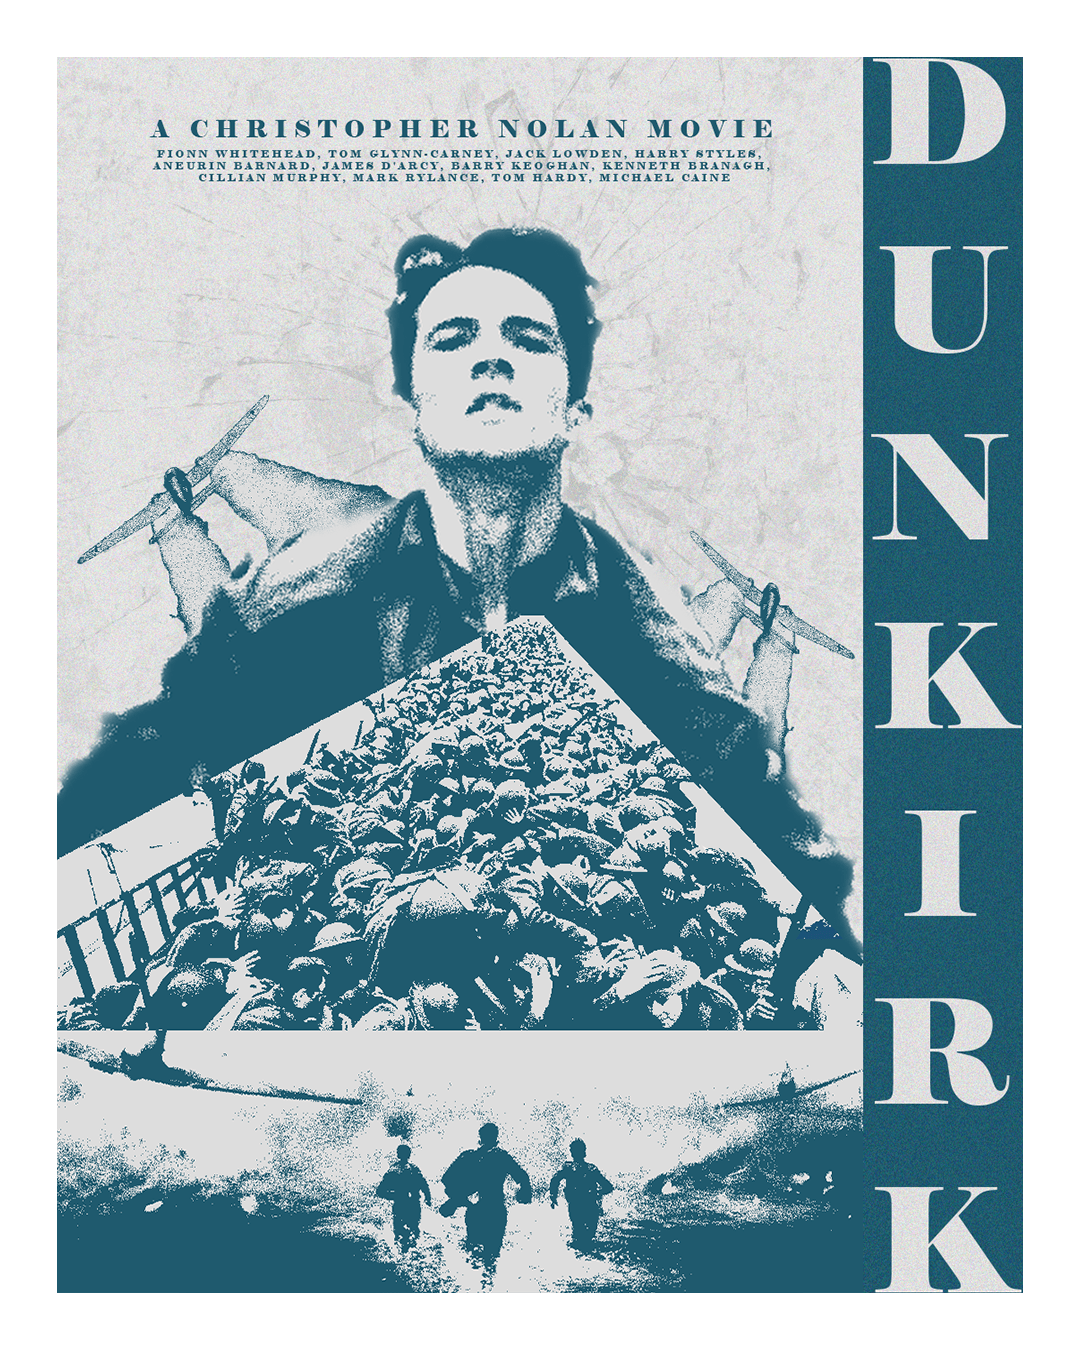 Christopher Nolan Movie Poster Design Dunkirk